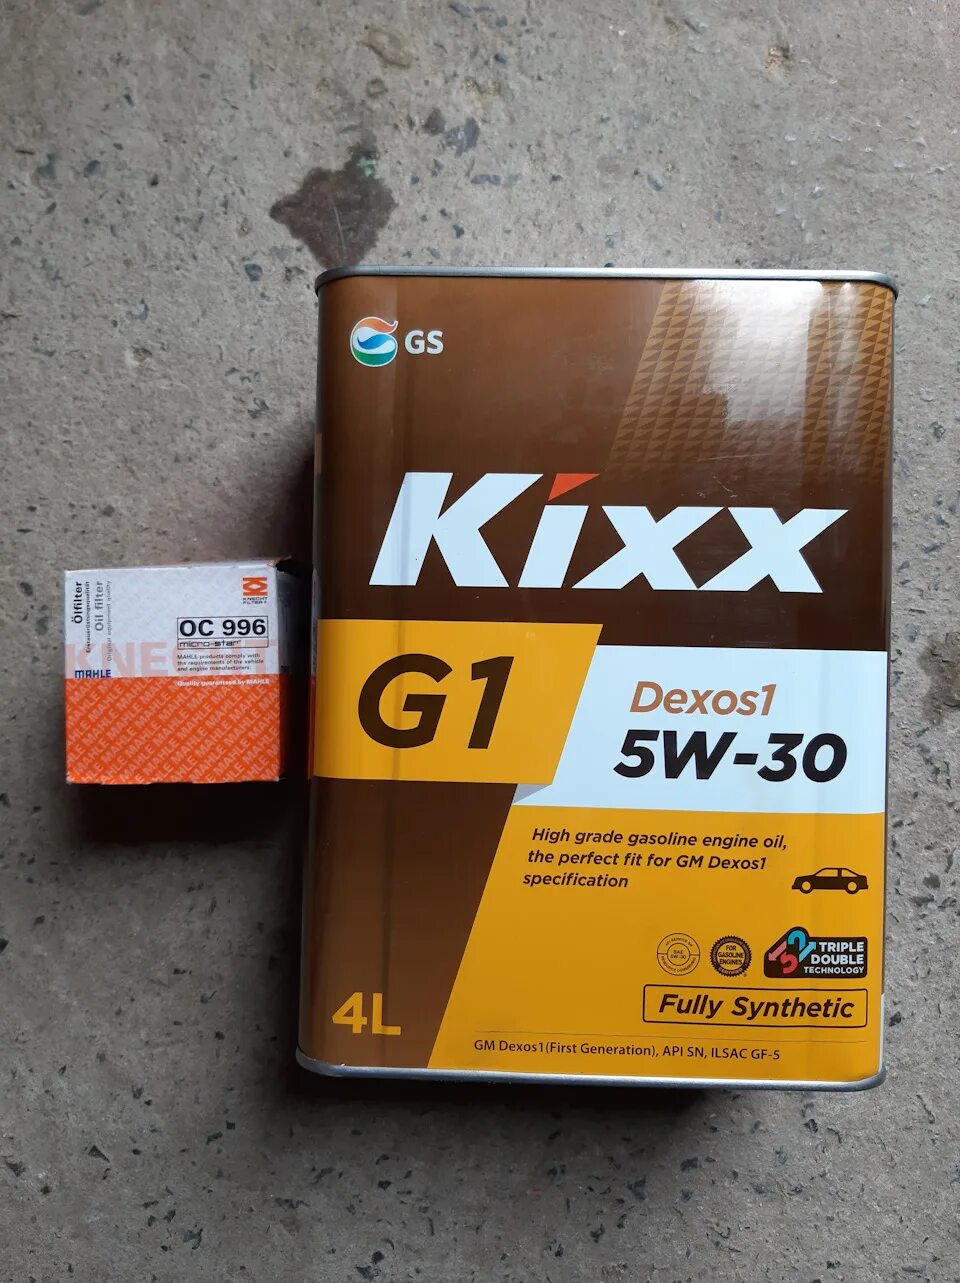 Масло kixx 5w30 sp. Масло Кикс g1 5w30. Масло Кикс 5w30 gq. Kixx g1 5w-30. Kixx g1 dexos1 5w-30.